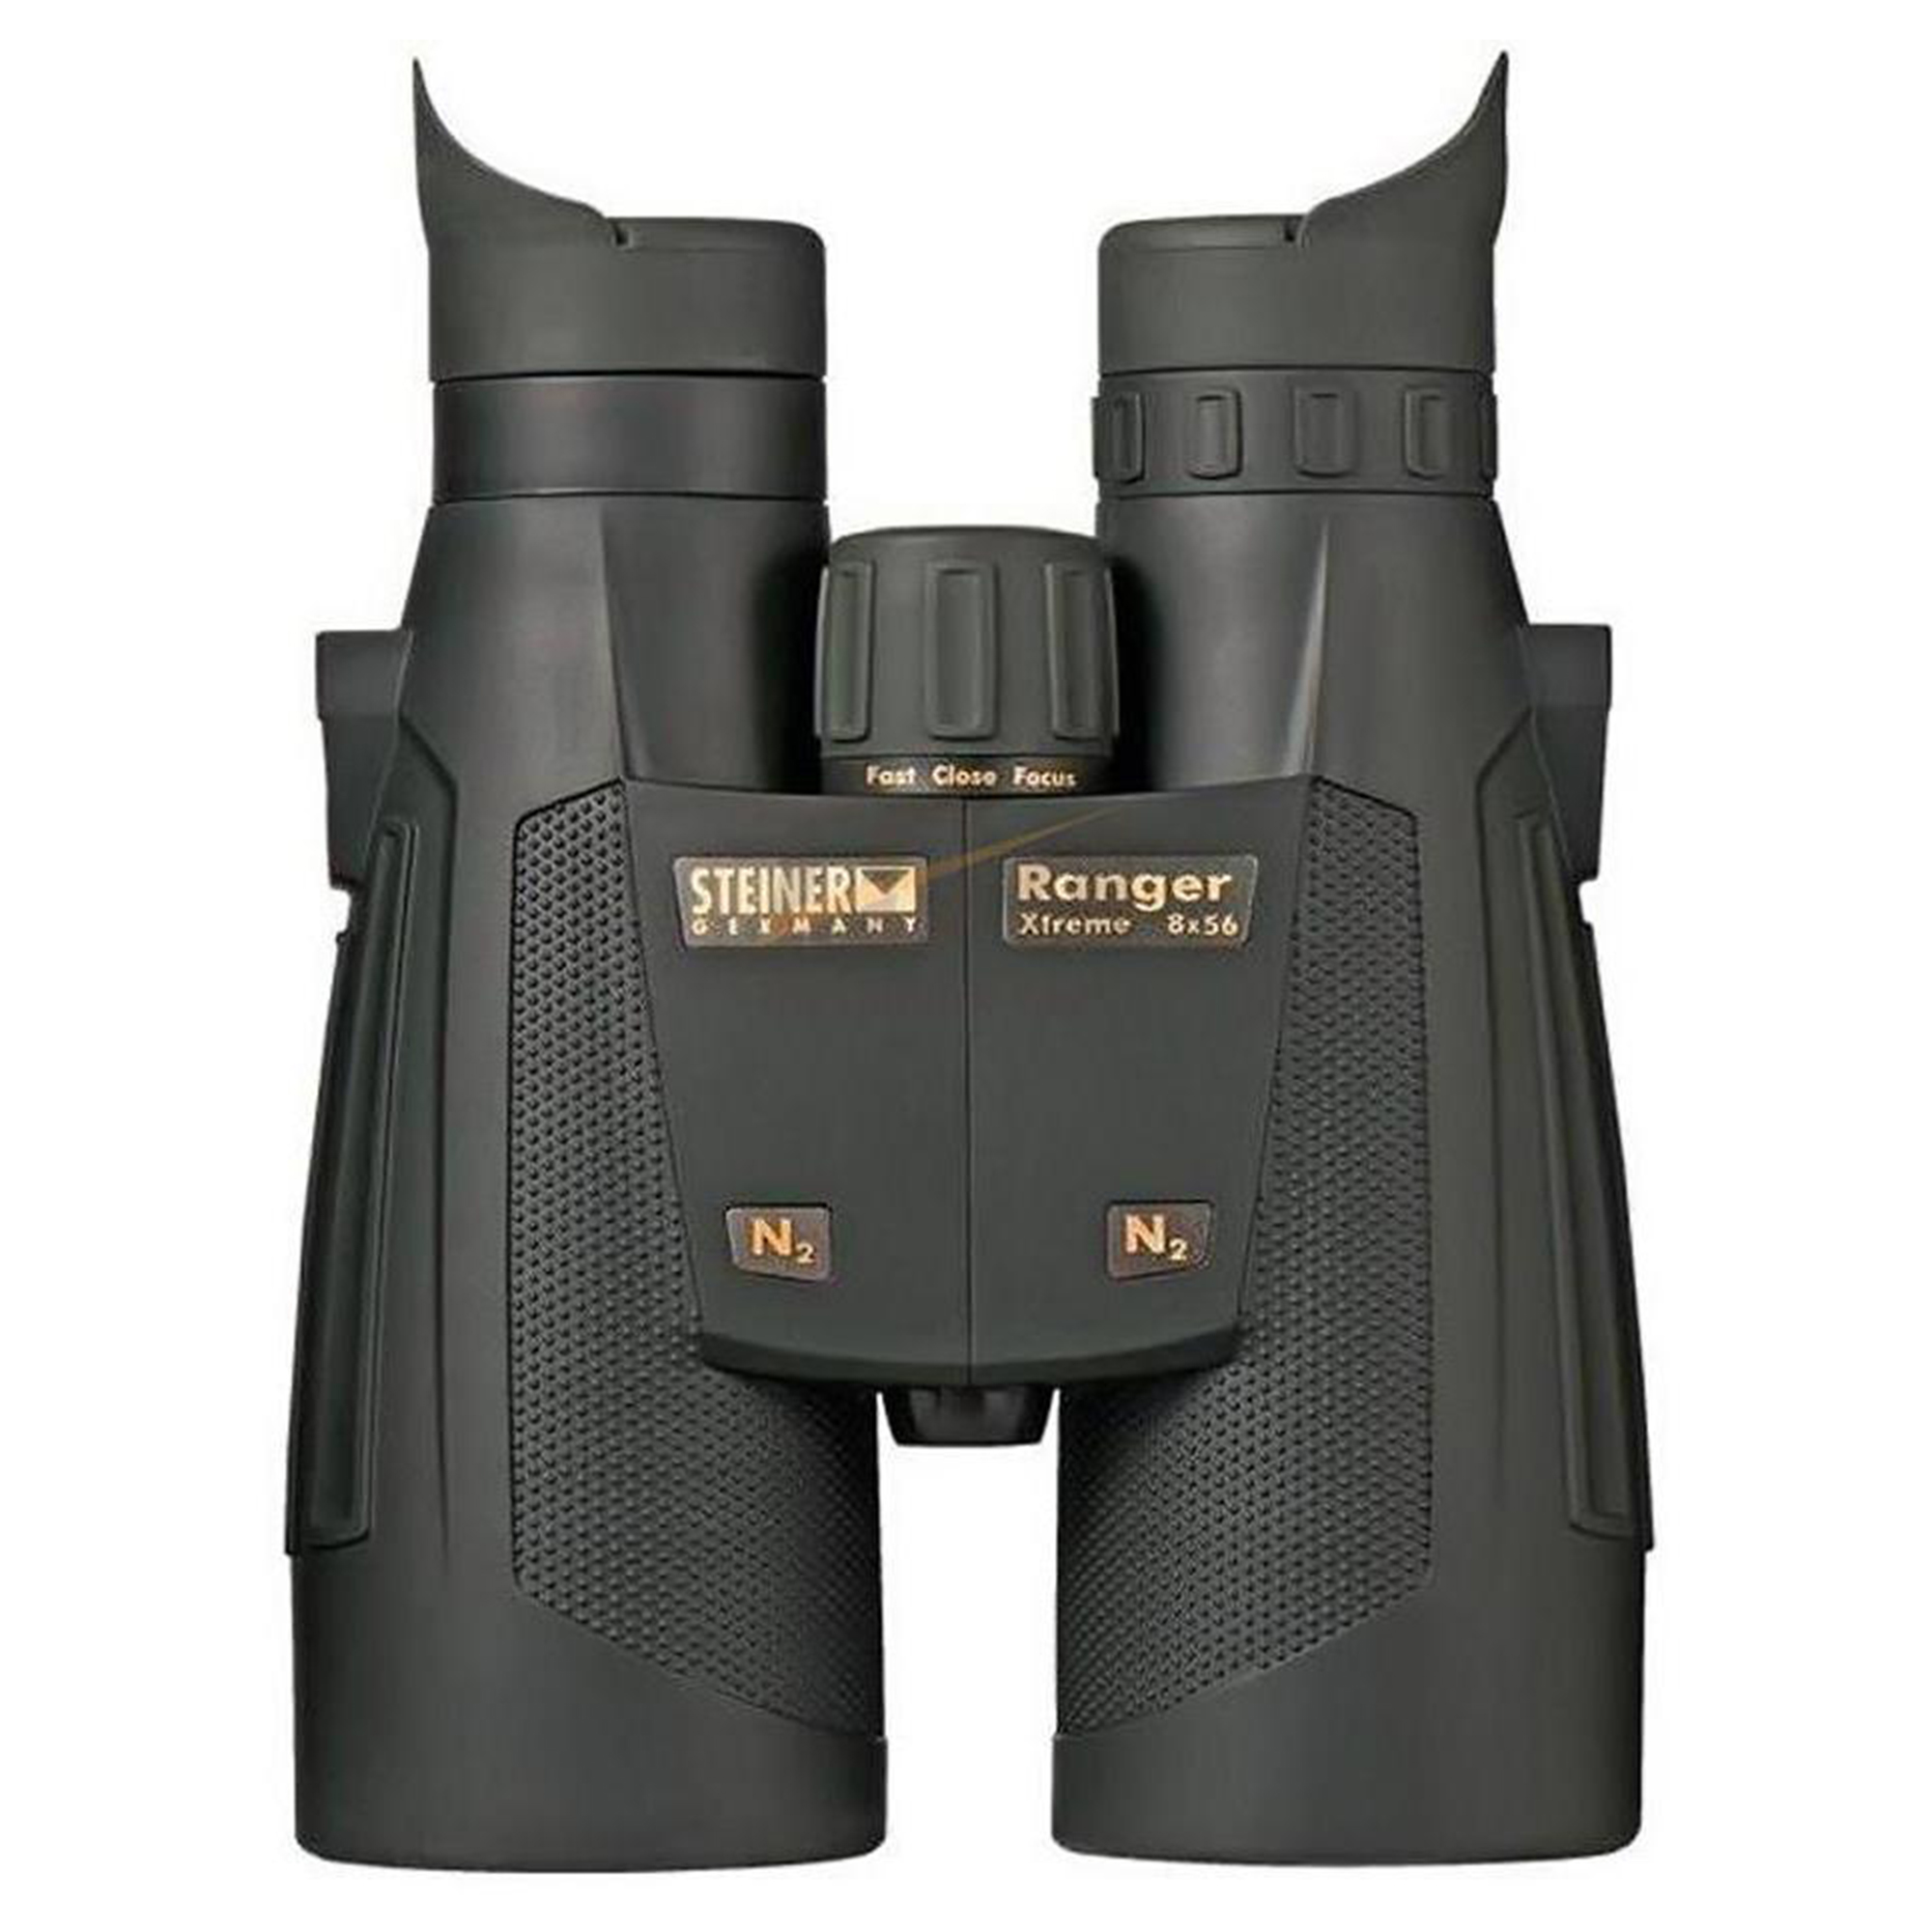 Steiner Ranger Xtreme 8x56 Binocular